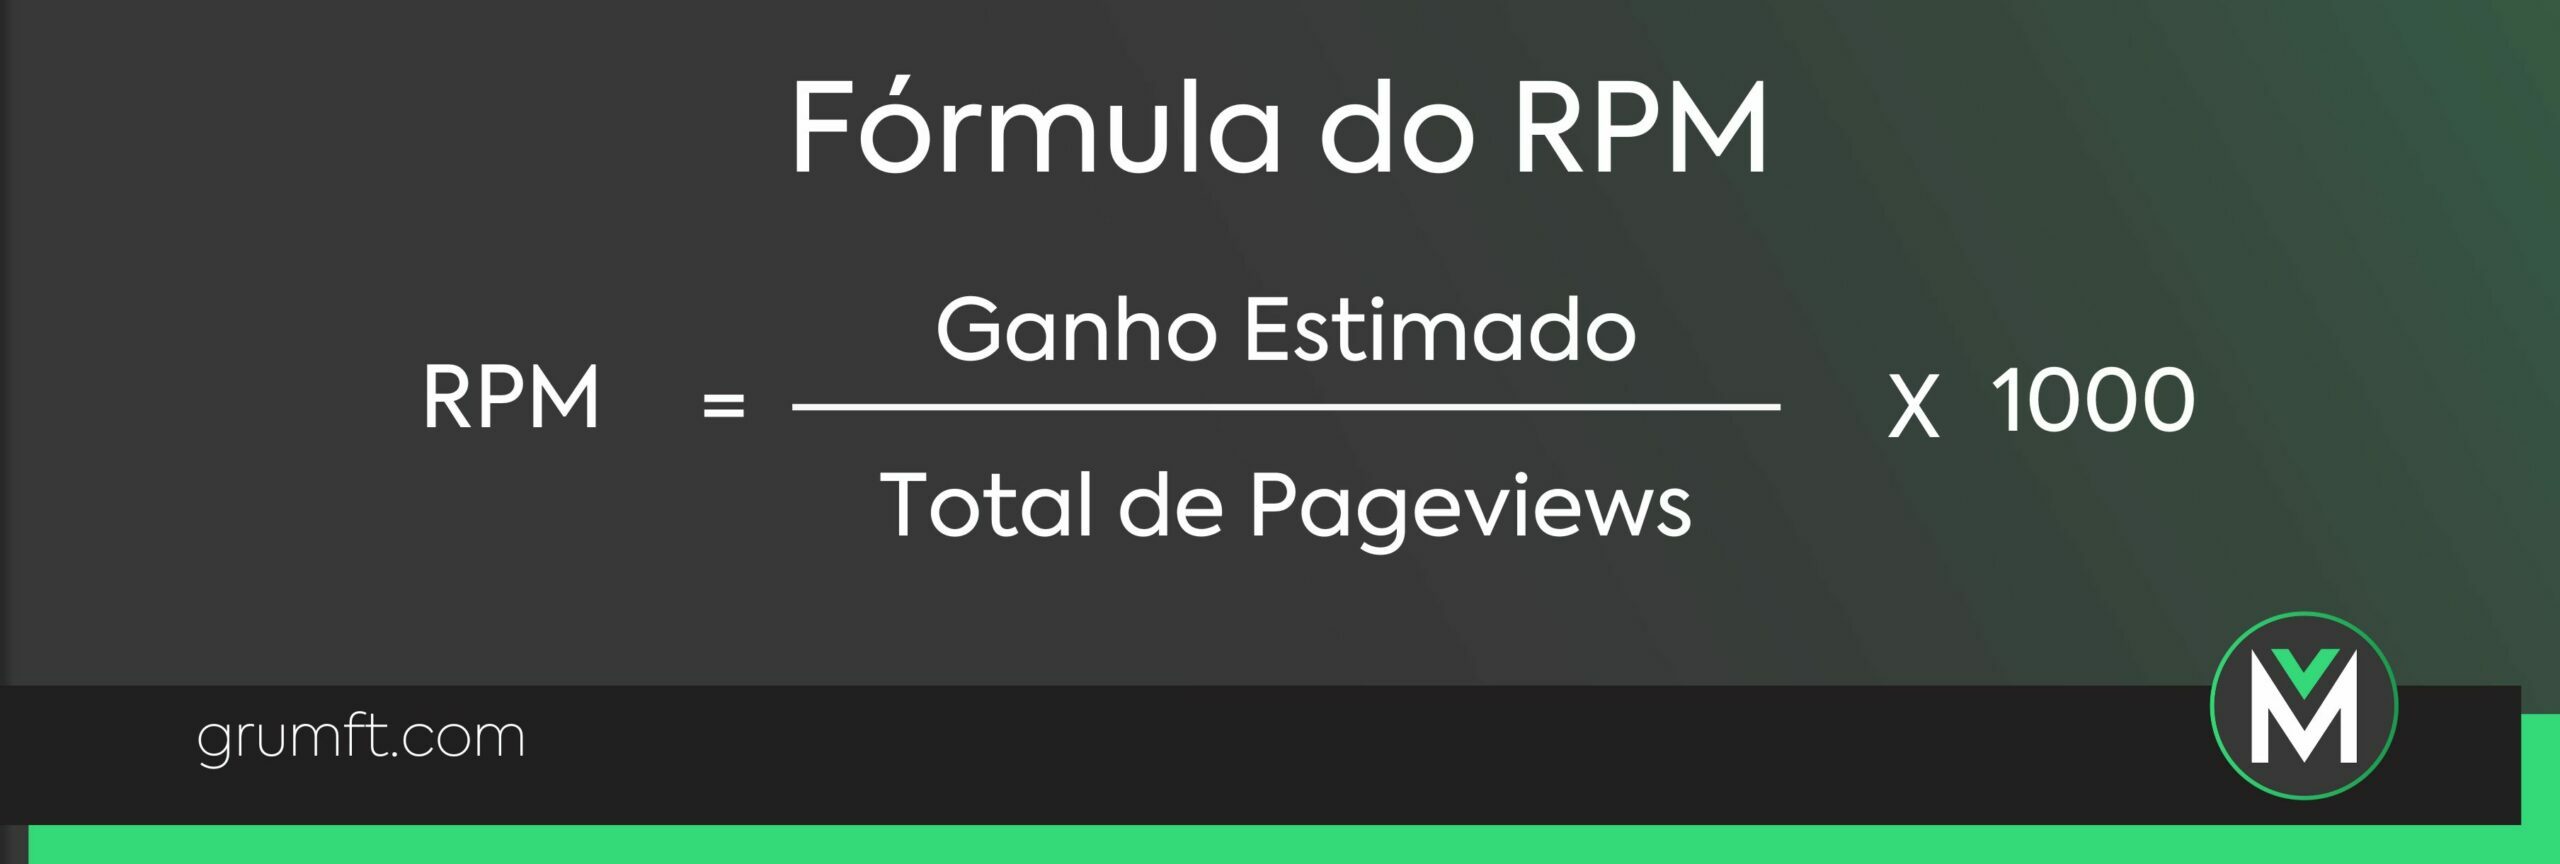 Fórmula do RPM